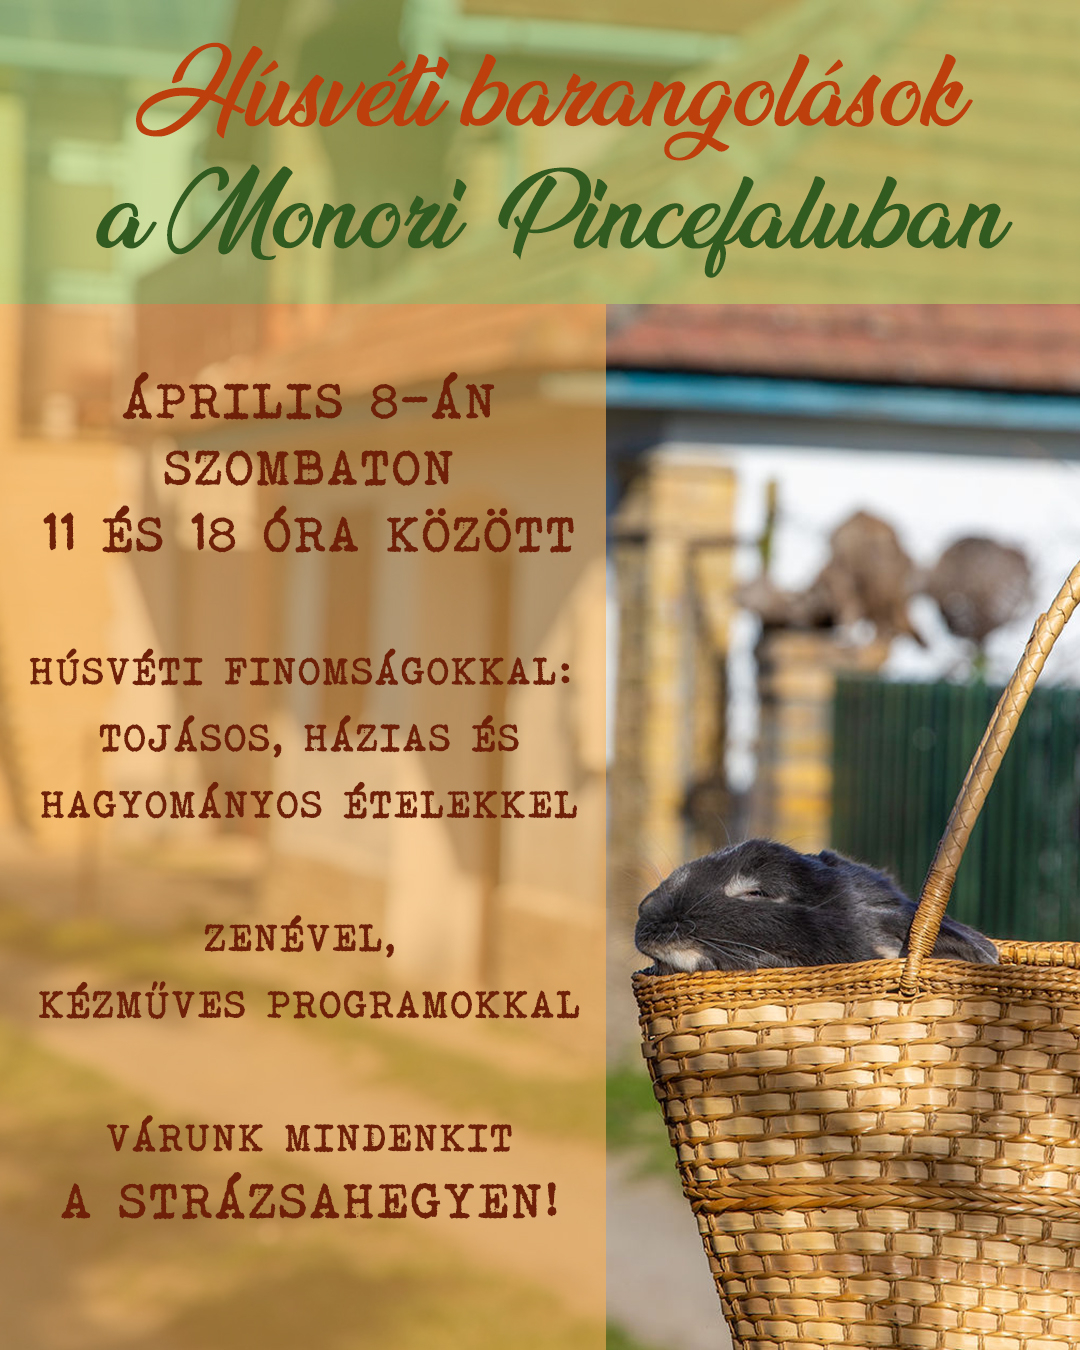 Húsvéti barangolások a Monori Pincefaluban